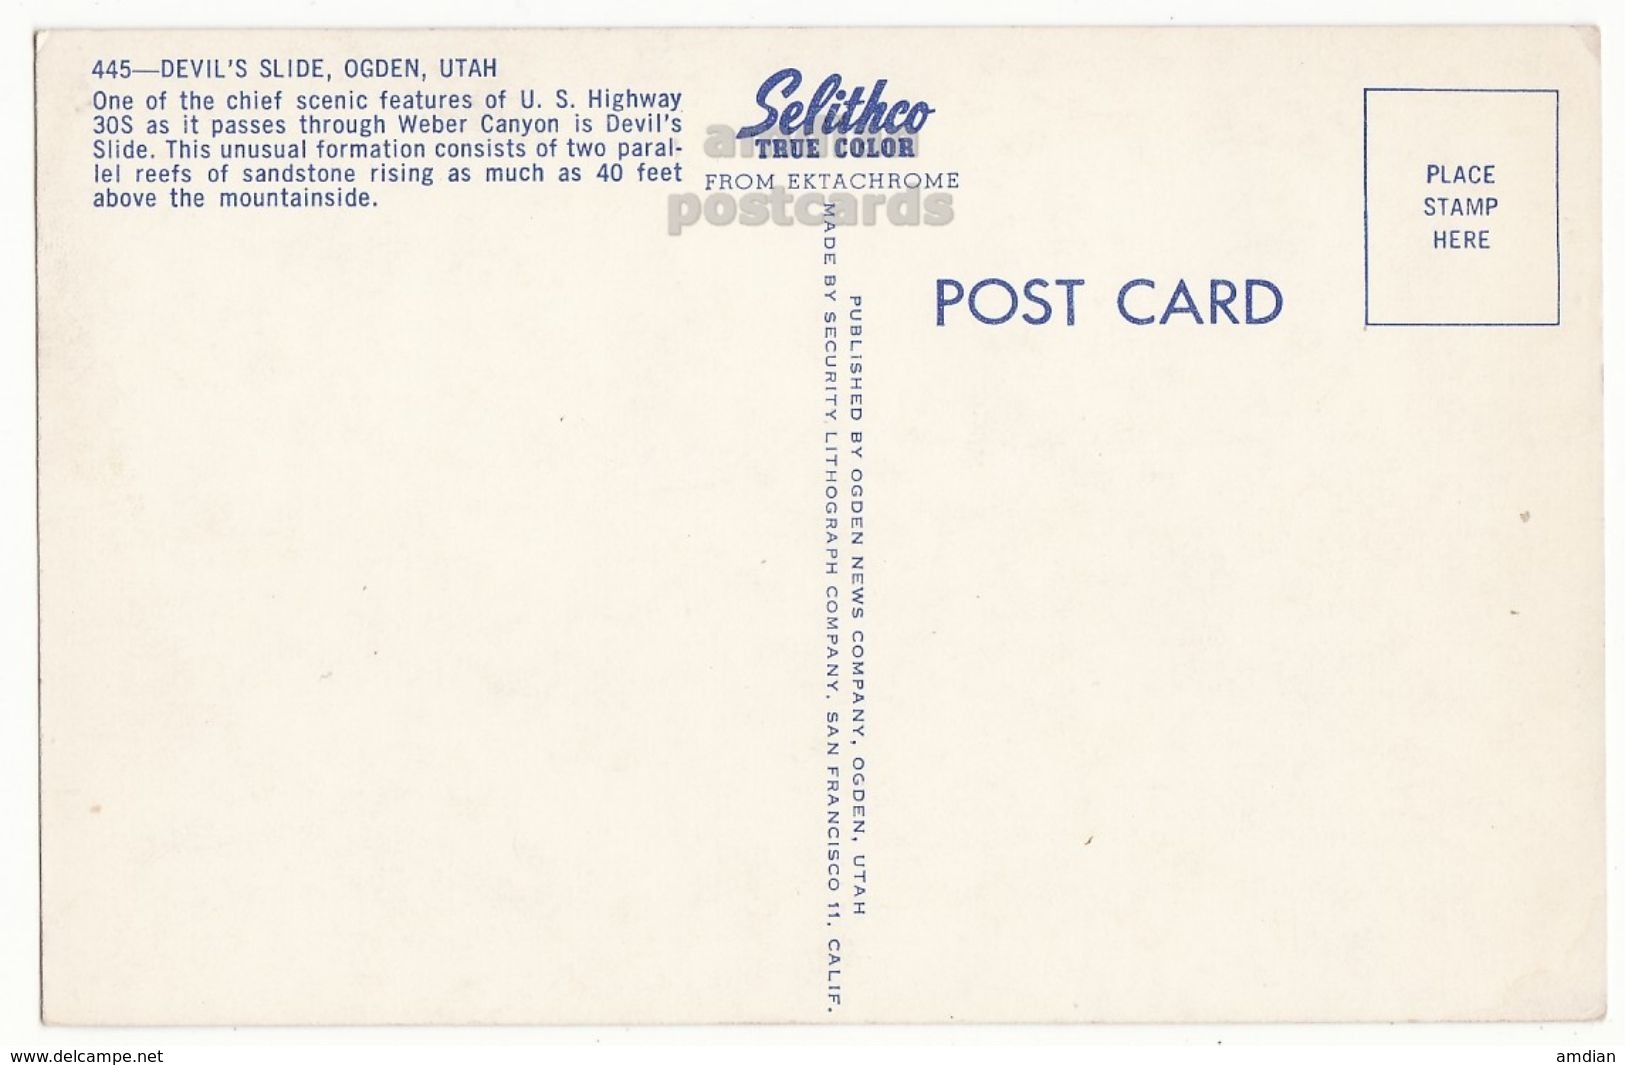 USA, Ogden UT, Devil's Slide At Weber Canyon, C1950s Unused Vintage Utah Chrome Postcard M8788 - Ogden